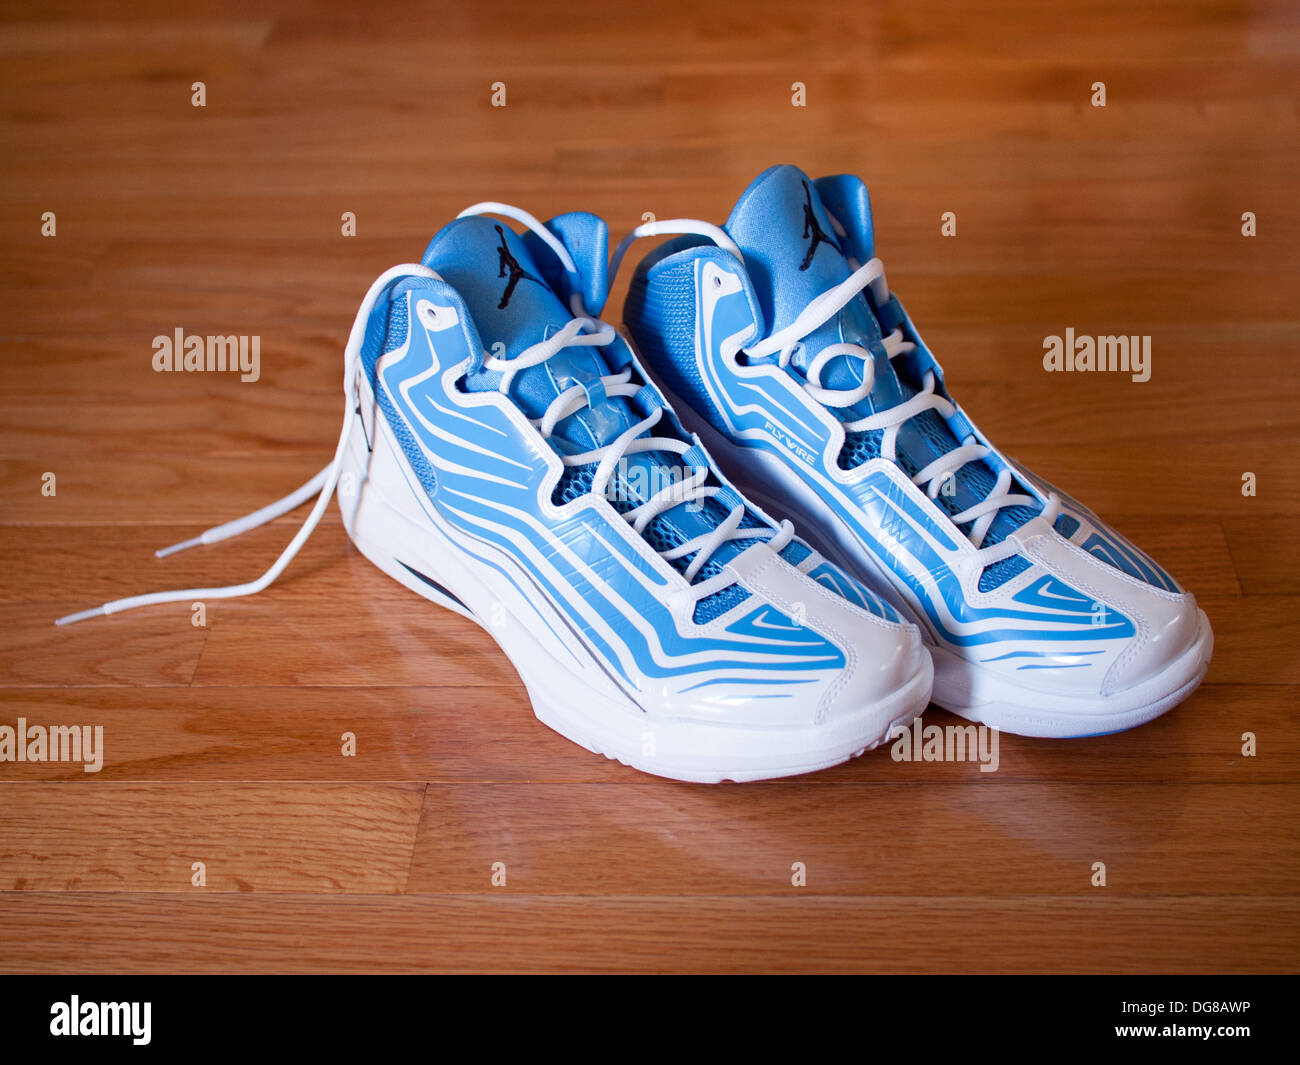 Une paire de bleu de l'université, midnight navy et blanc Jordan Aero Mania chaussures de basket-ball. Banque D'Images